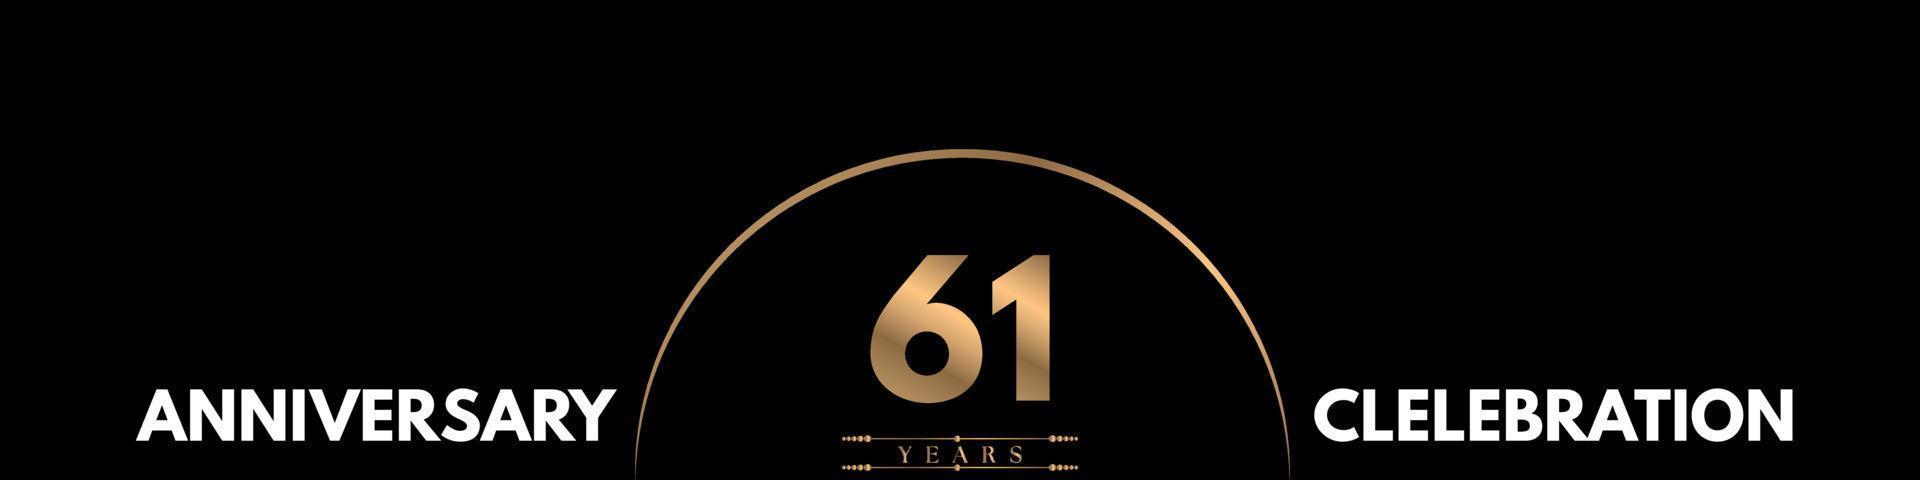 Celebración del aniversario de 61 años con un número elegante aislado en fondo negro. diseño vectorial para tarjeta de felicitación, fiesta de cumpleaños, boda, fiesta, ceremonia, tarjeta de invitación. vector